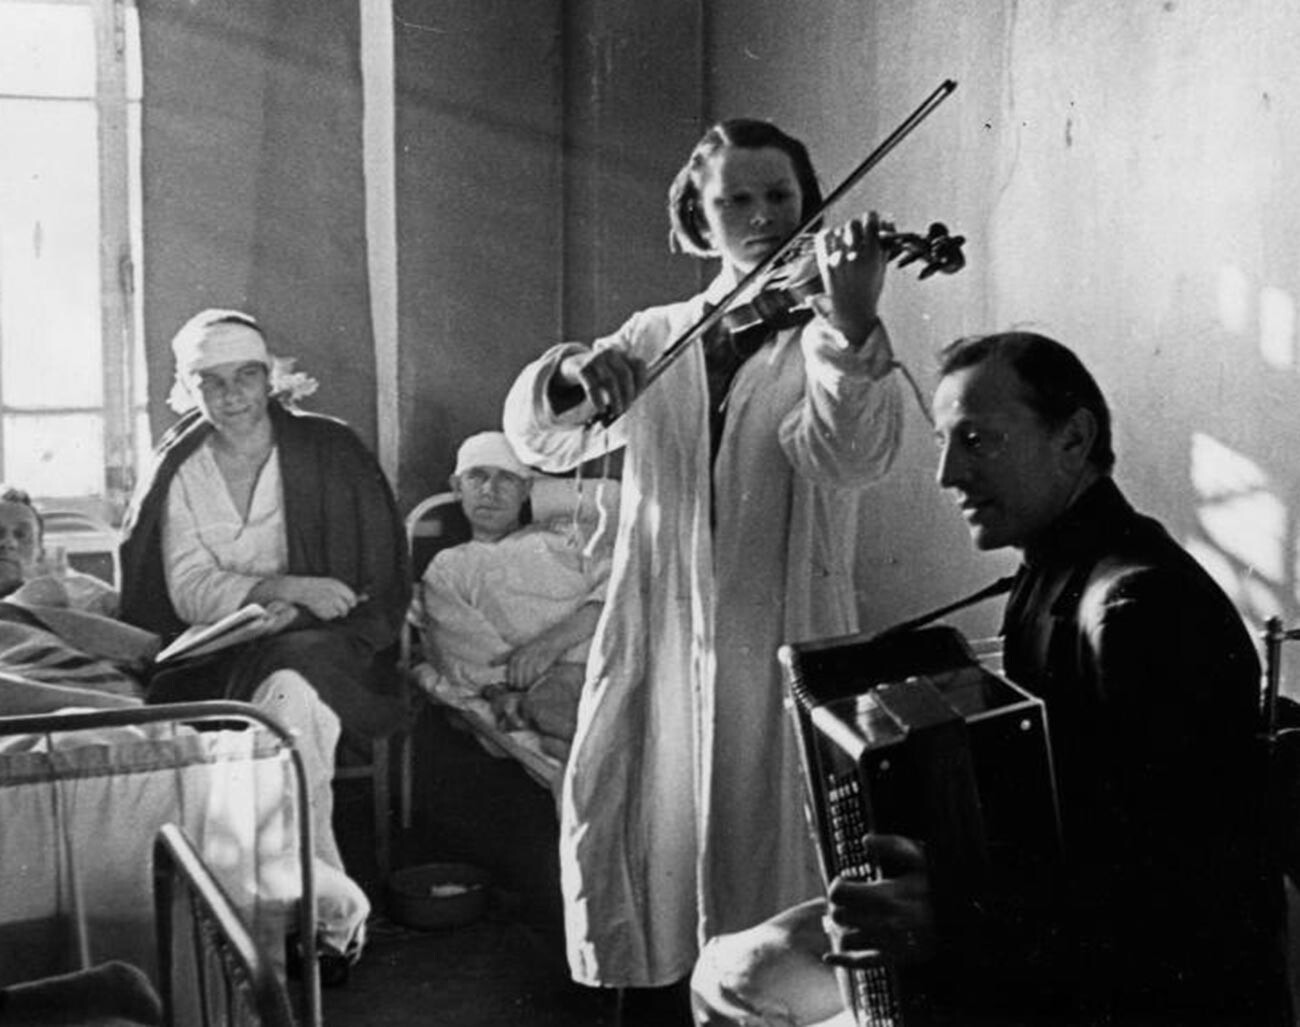 ソ連の人々は芸術が治療に役立つと考えていた。多くの音楽家が各地の軍の病院を回り、時には前線に赴いて兵士を鼓舞した。